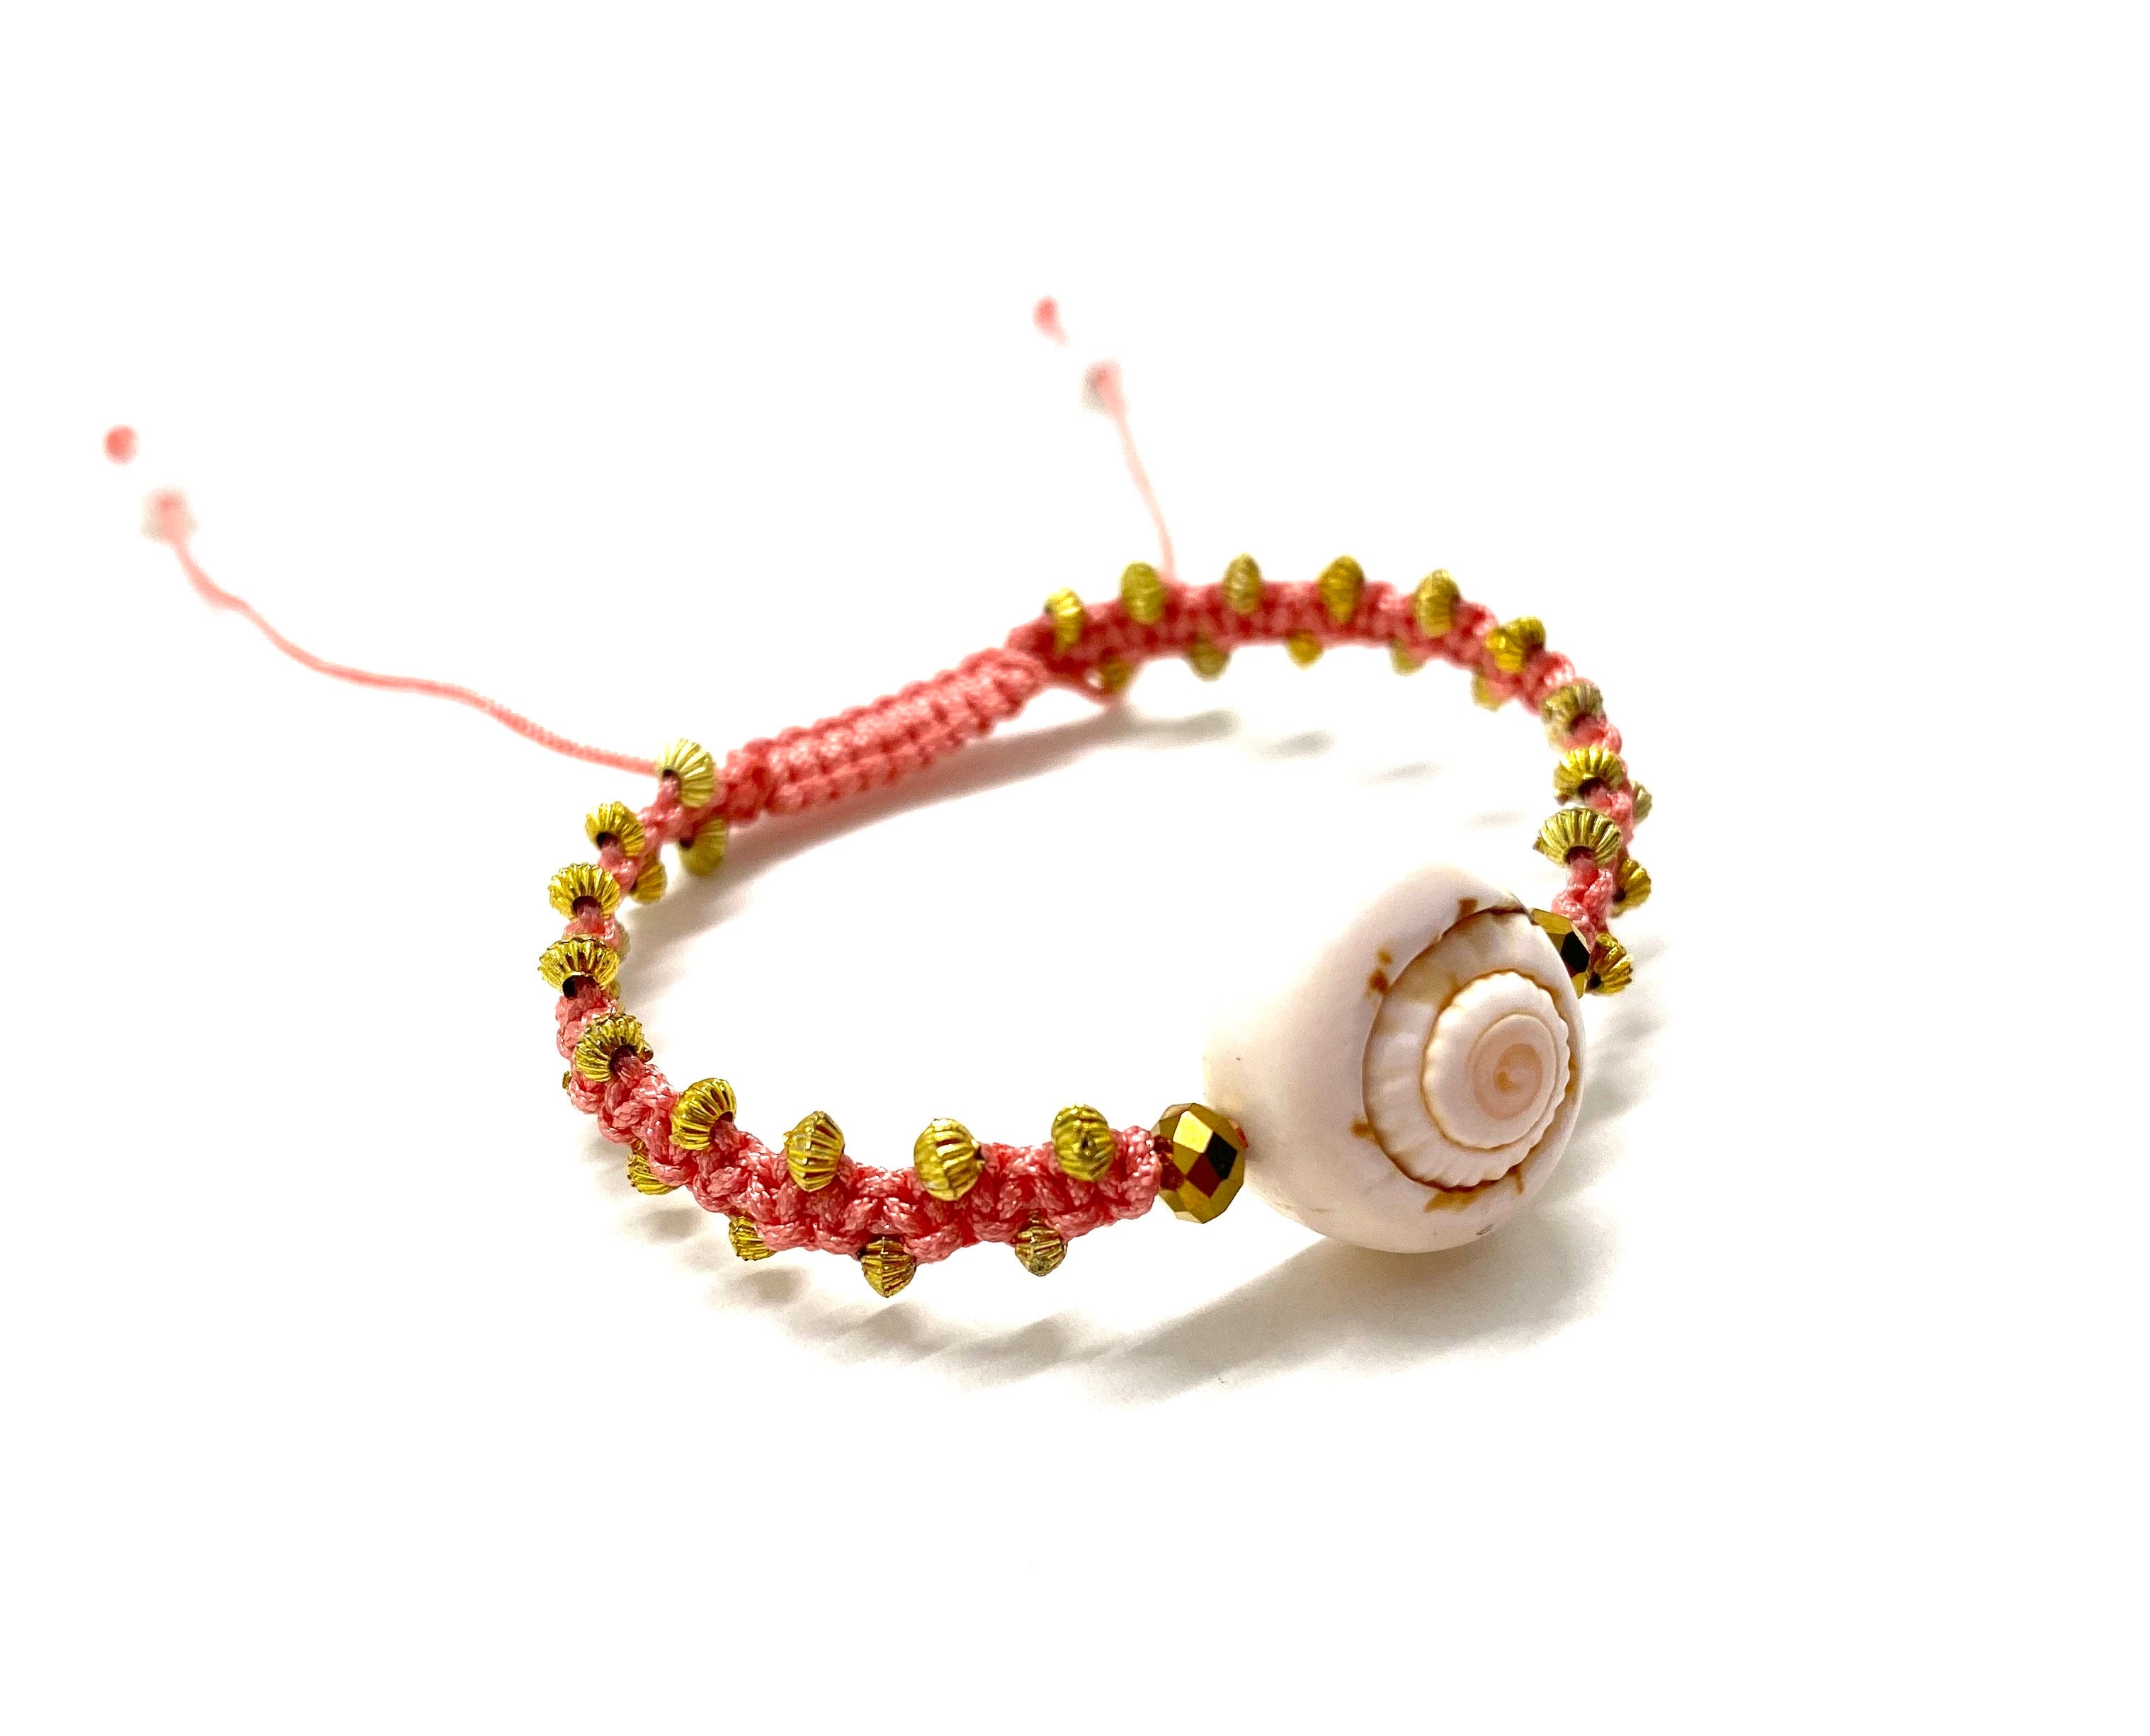 Seashell bracelet gold Swarovski bead, gold toupee and salmon braided cord